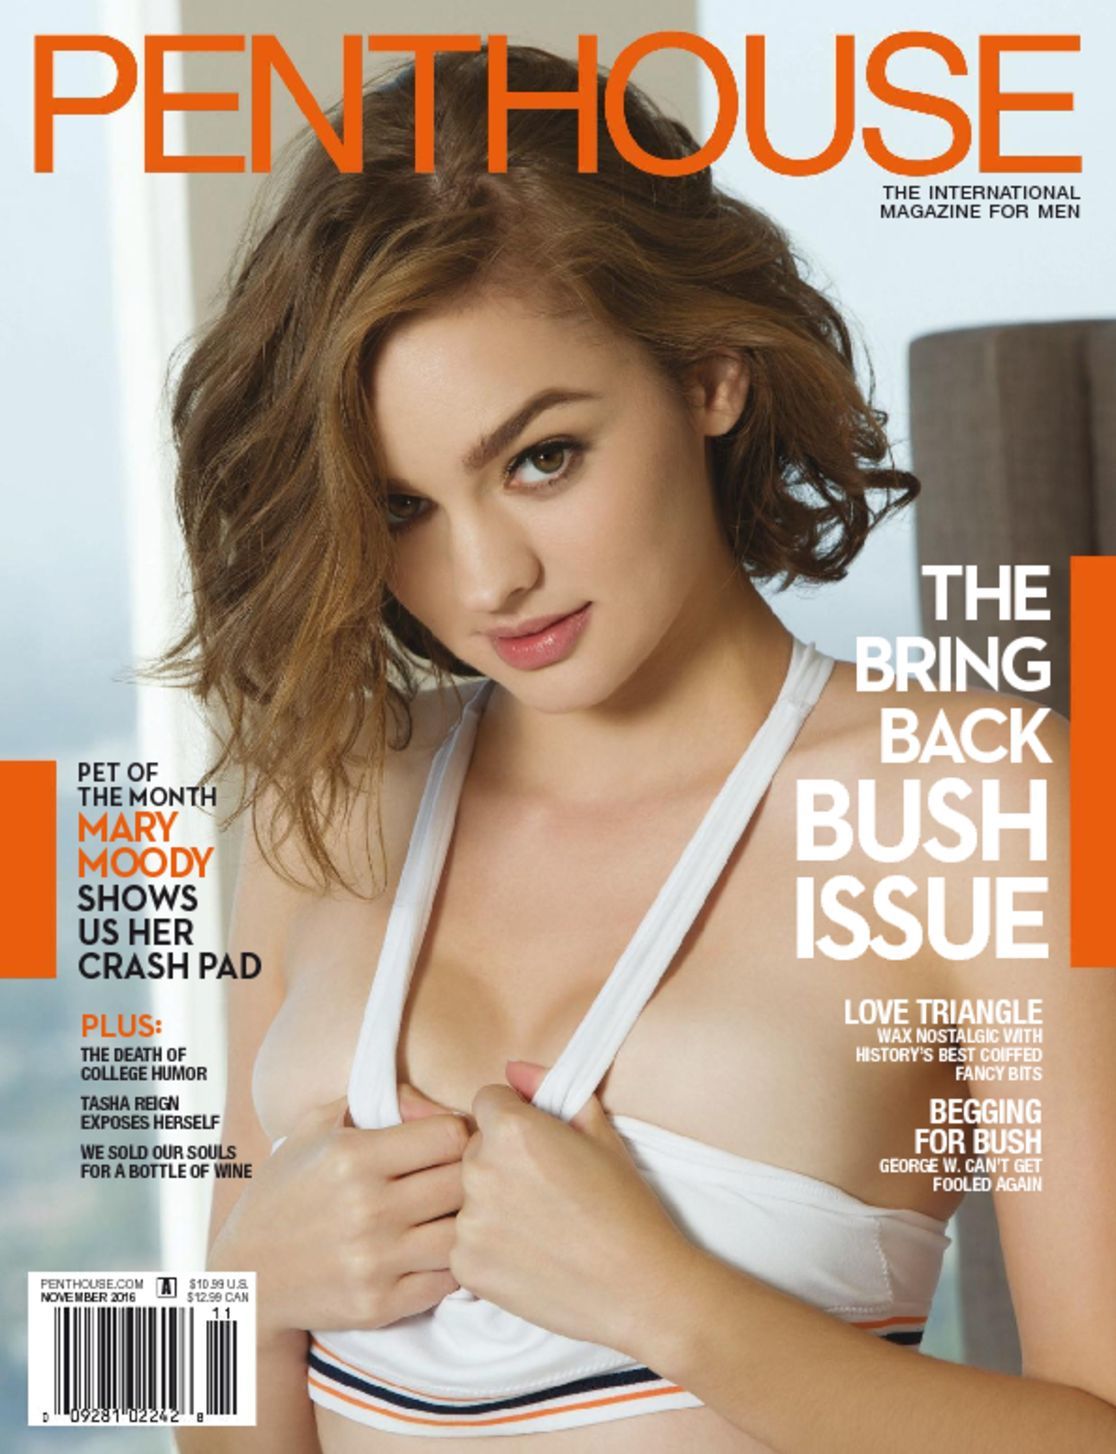 Porno Magazine Subscription 93